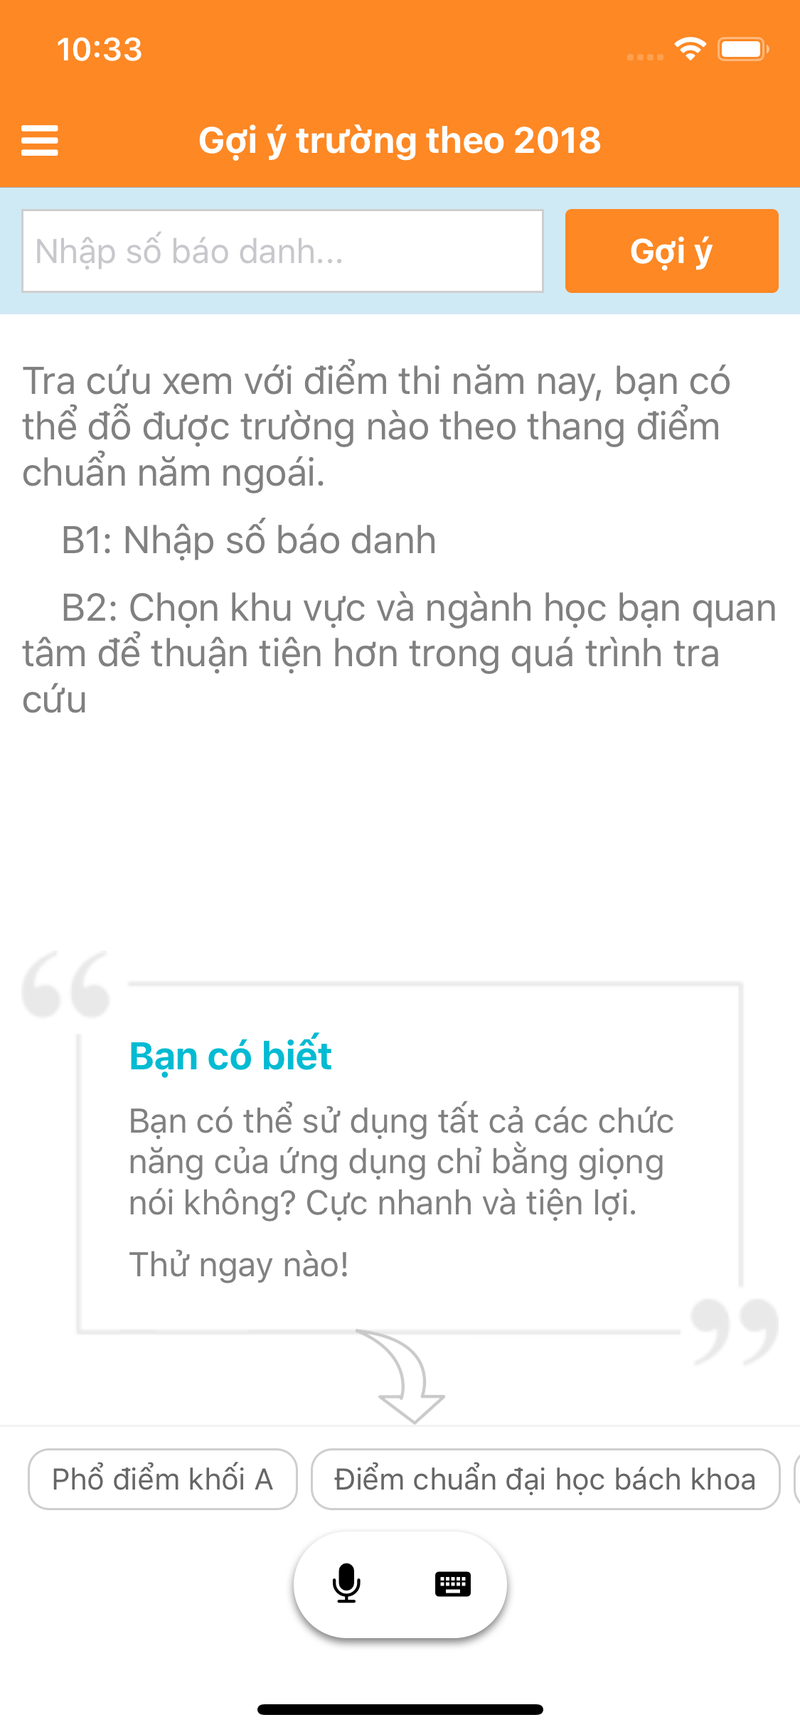 Ung dung tro ly mua thi giup thi sinh chon truong cuc hot-Hinh-4